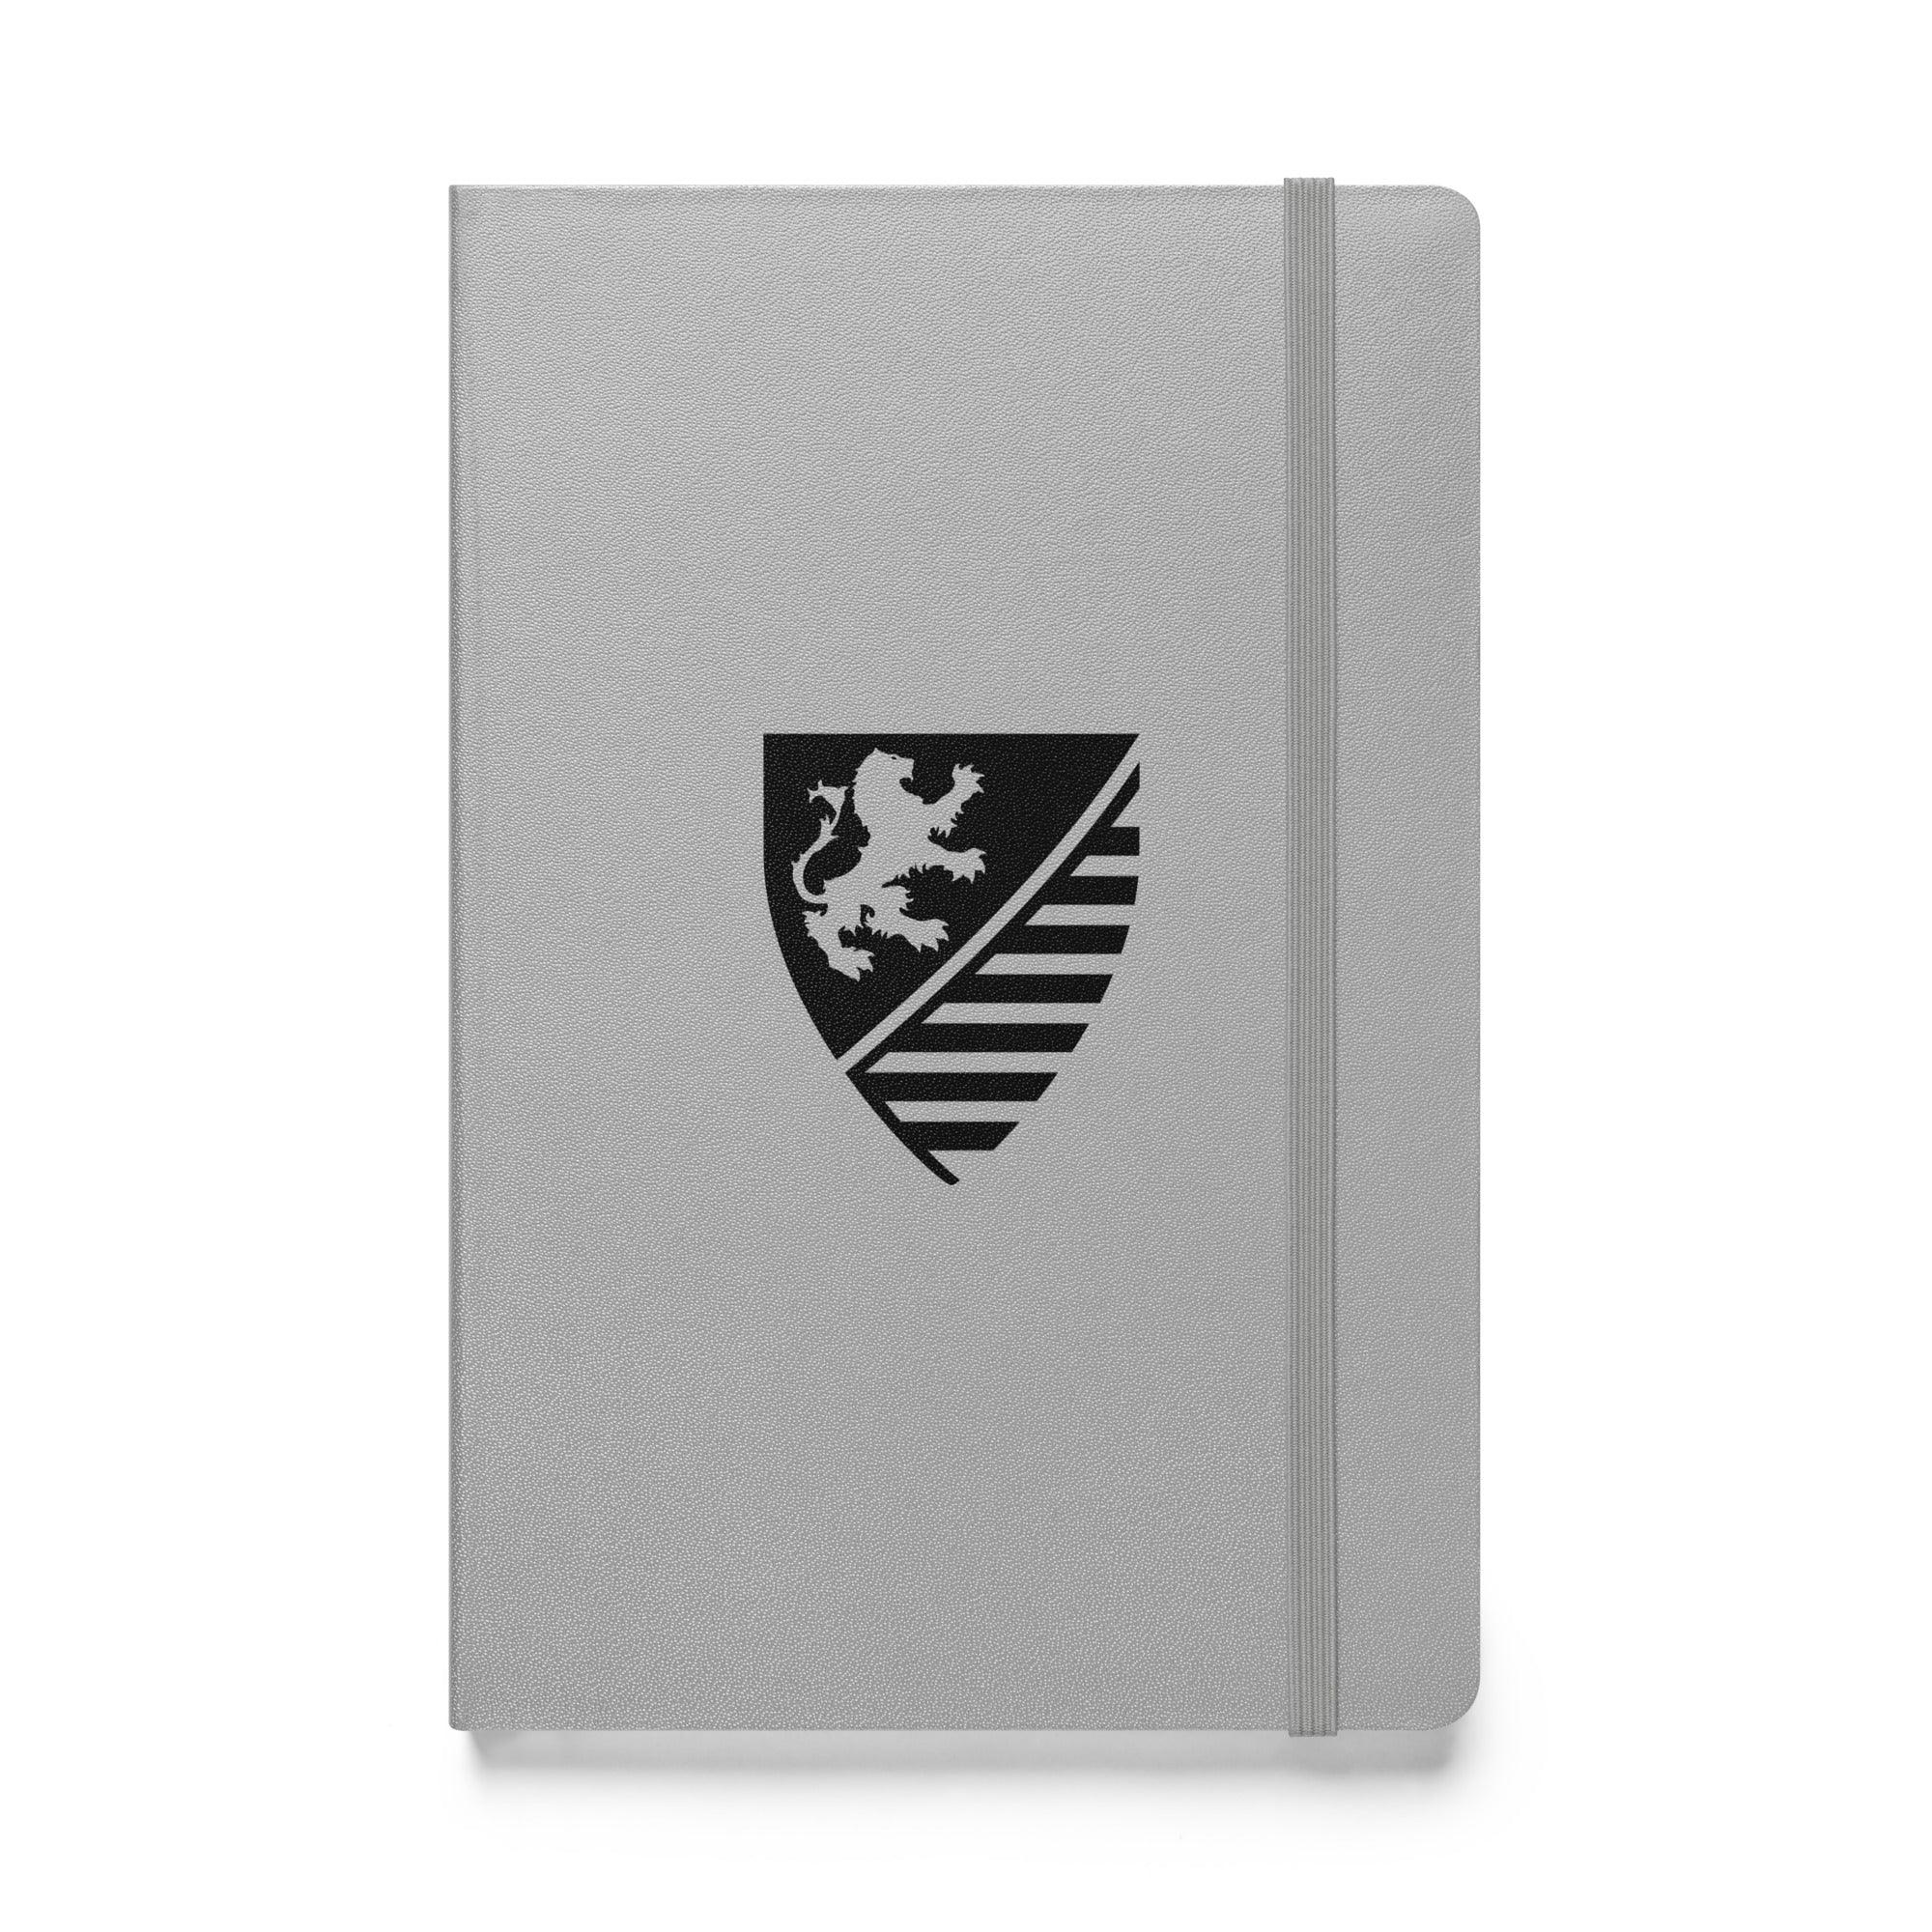 Noblesse Oblige - Hardcover Bound Notebook - Noblesse Oblige Apparel